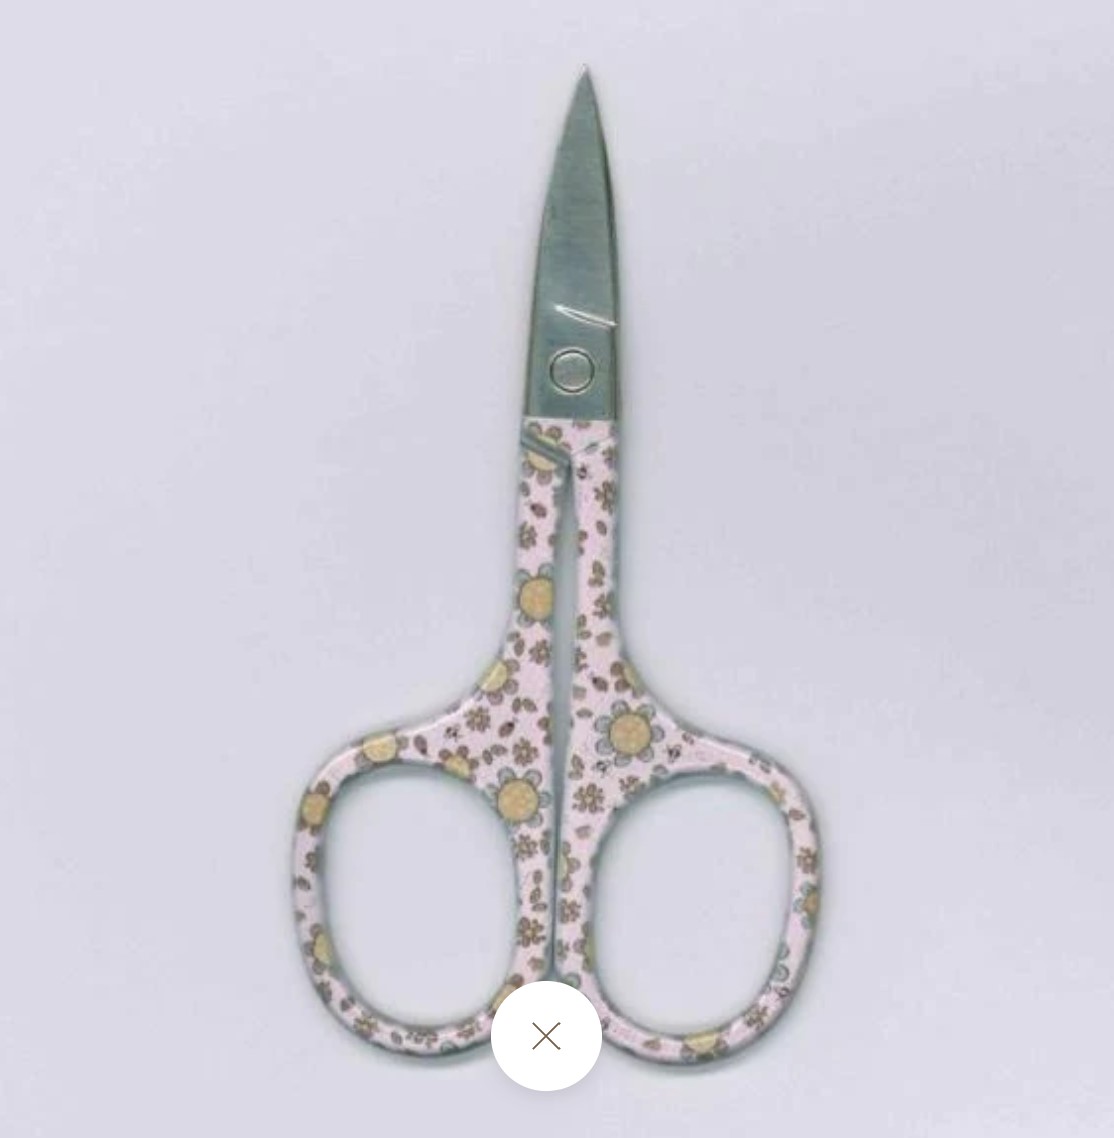 Moonflower scissors - pink